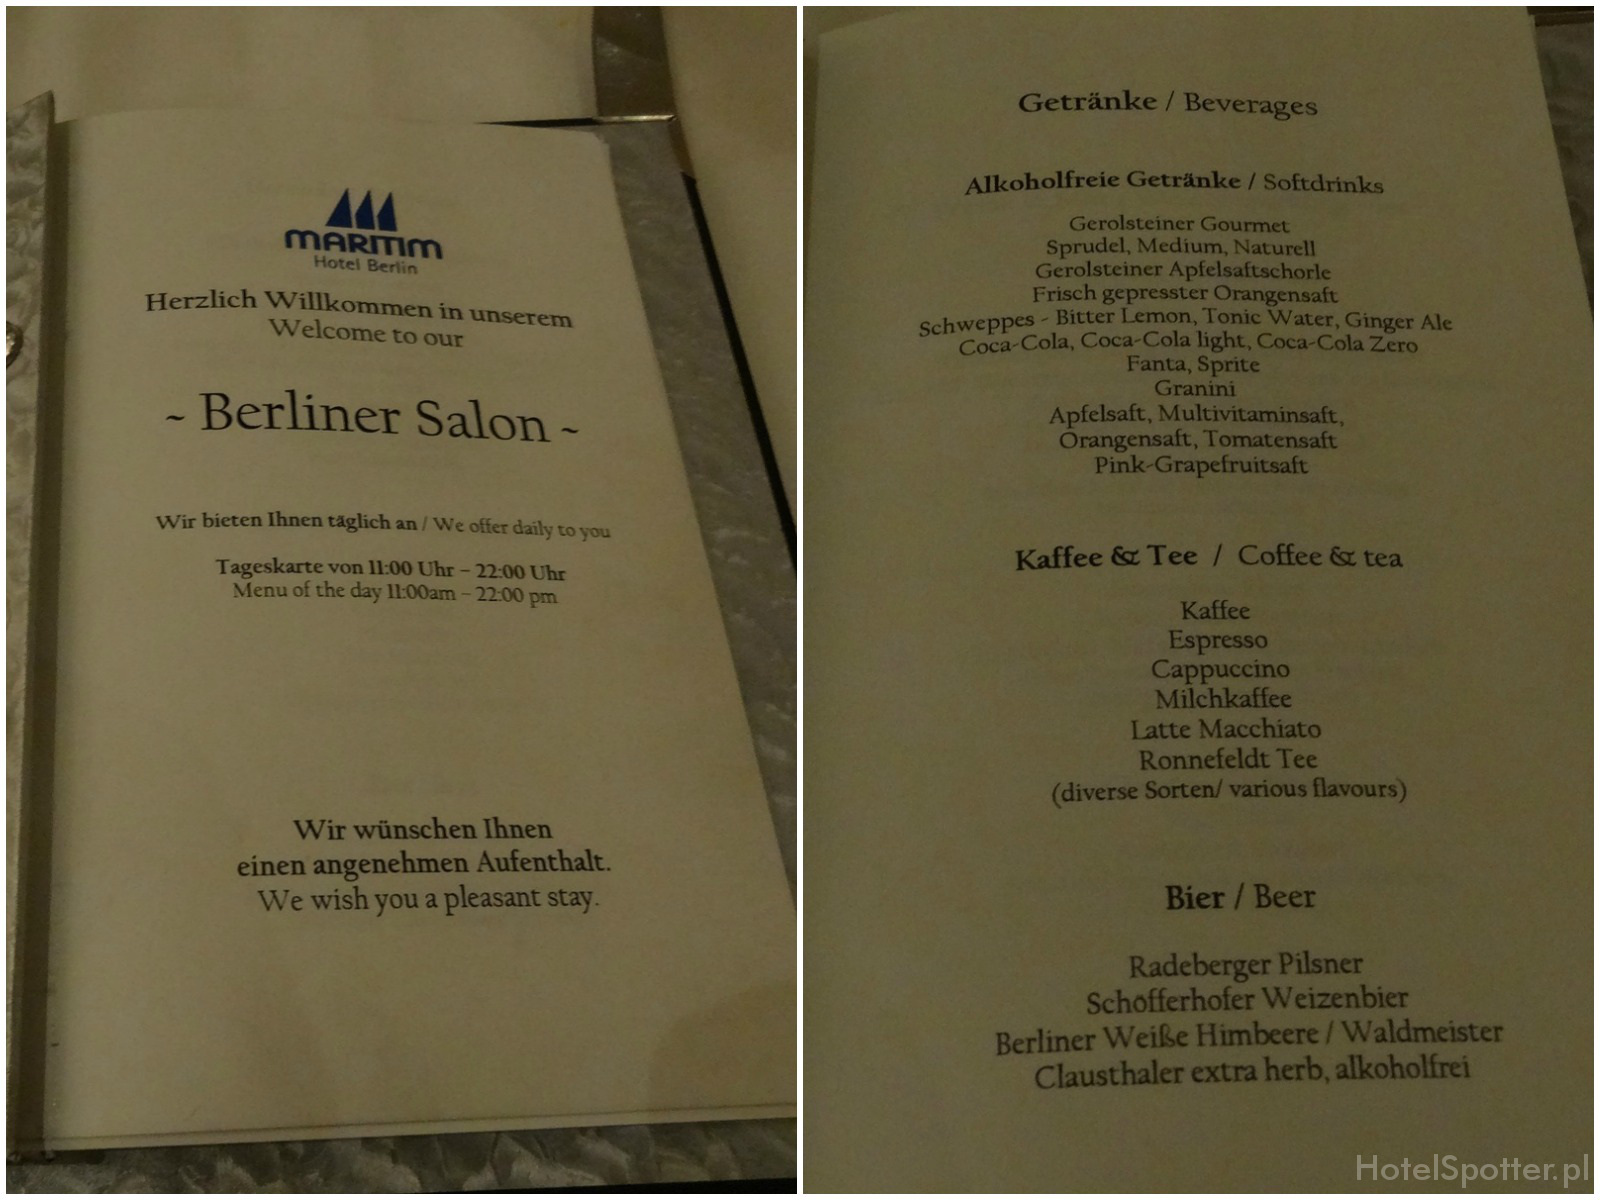 Maritim Hotel Berlin - club lounge a la carte menu